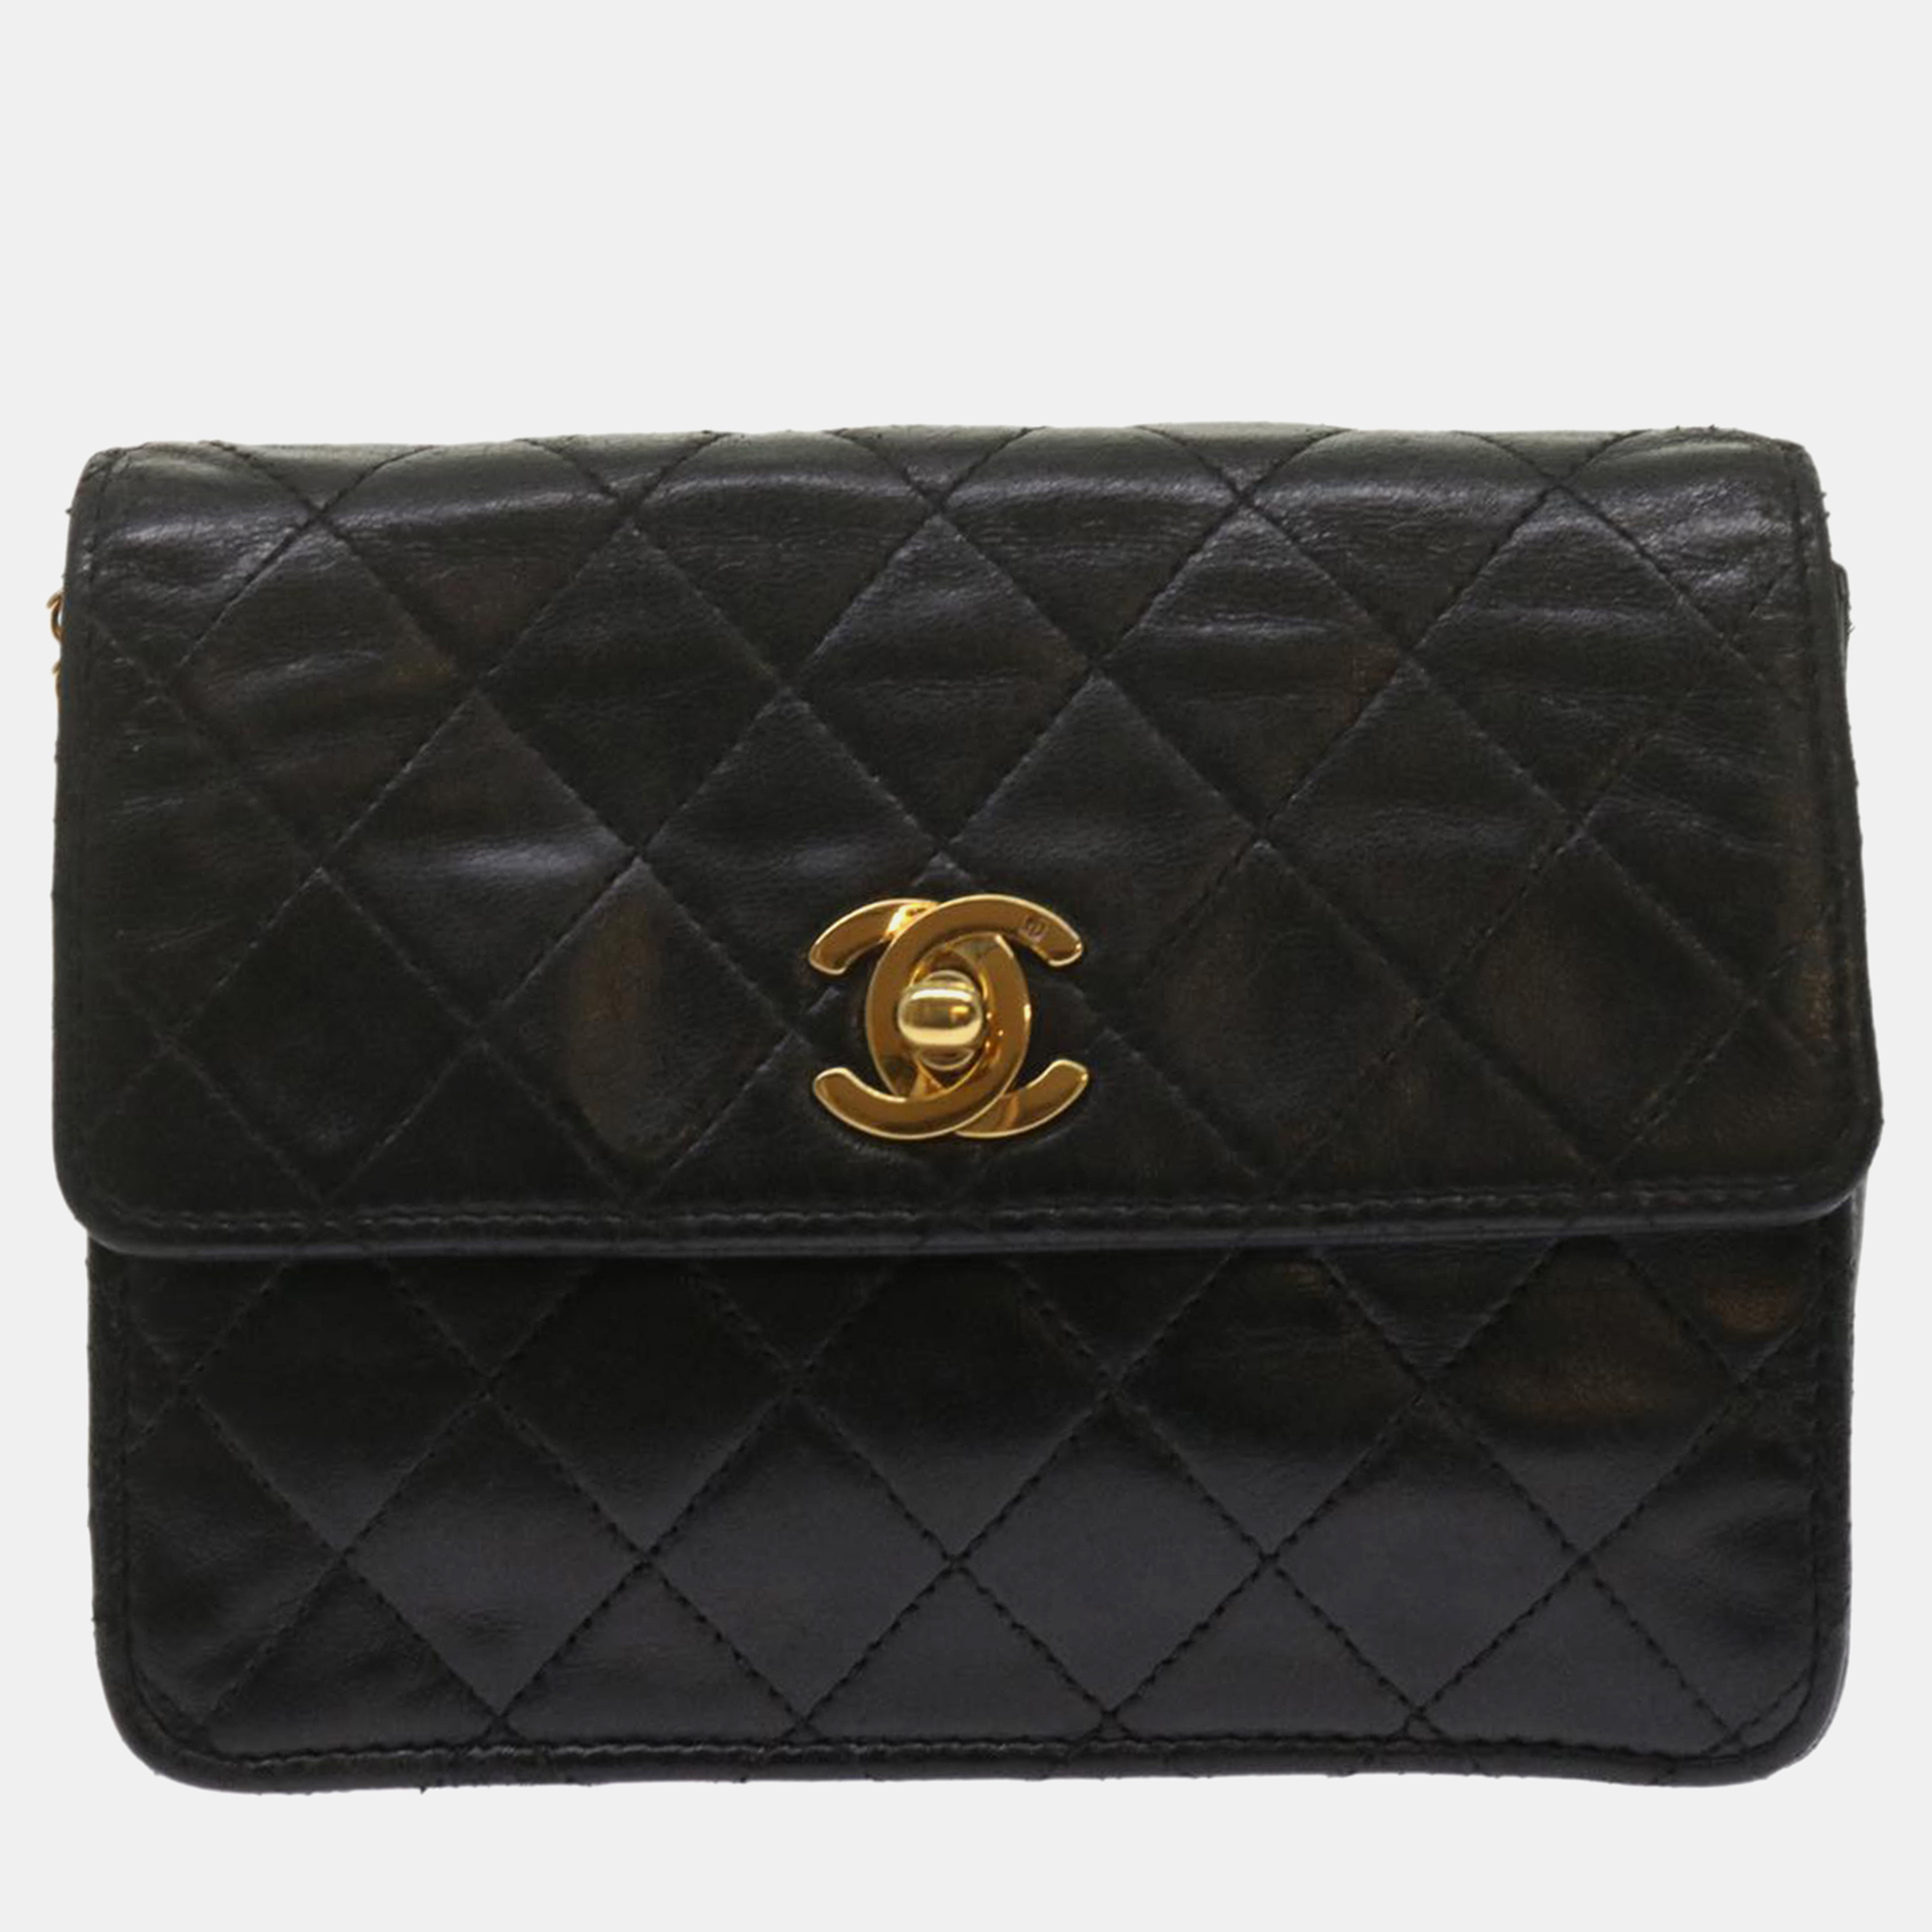 Chanel black leather vintage flap bag